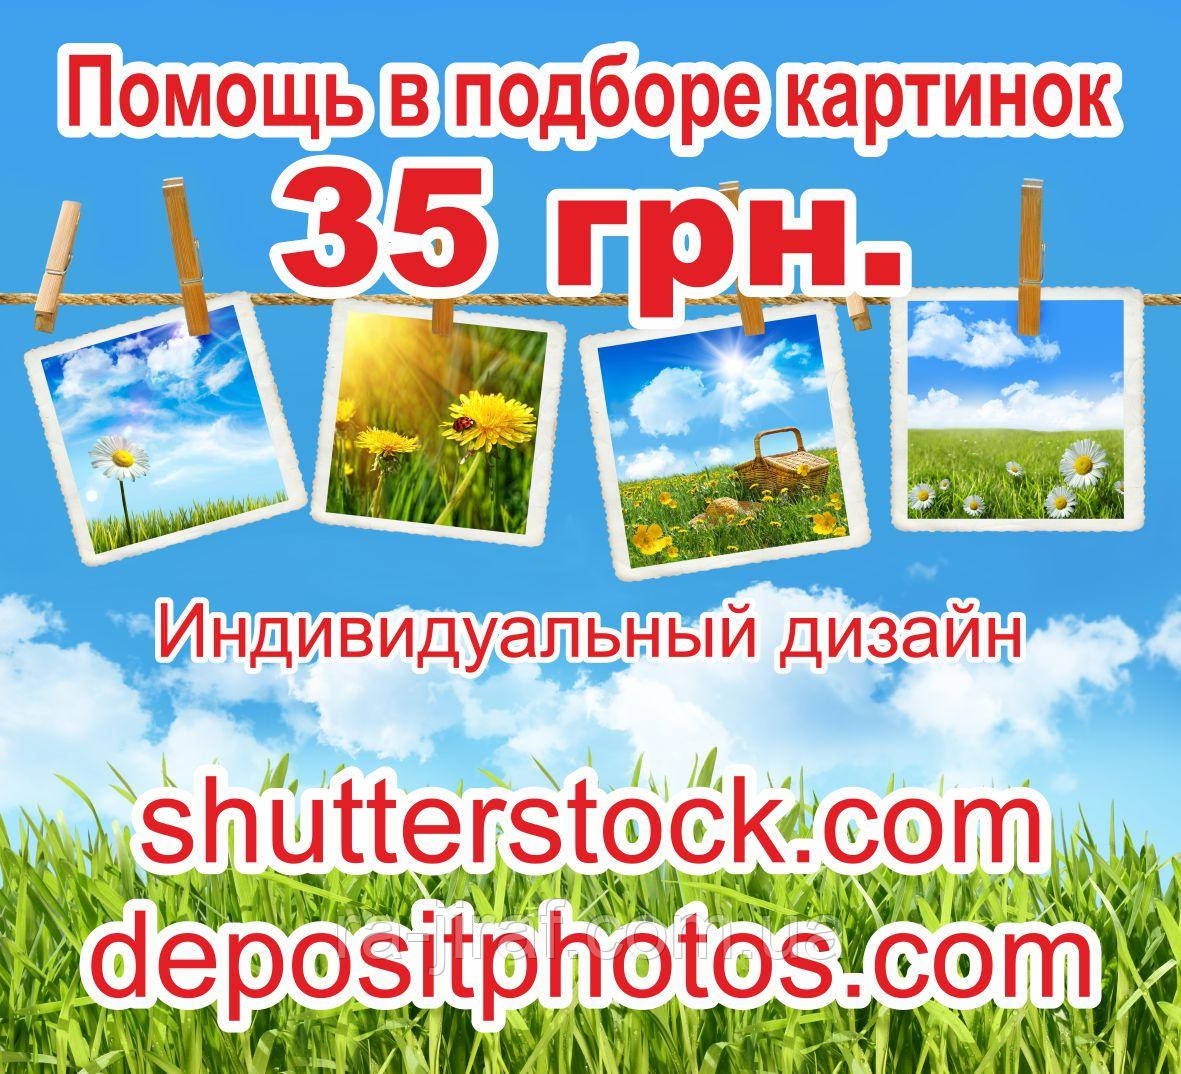 Фото, малюнок, малюнок, вектор з всесвітньо відомих фотобанків: shutterstock, depositphotos. Допомога в підборі